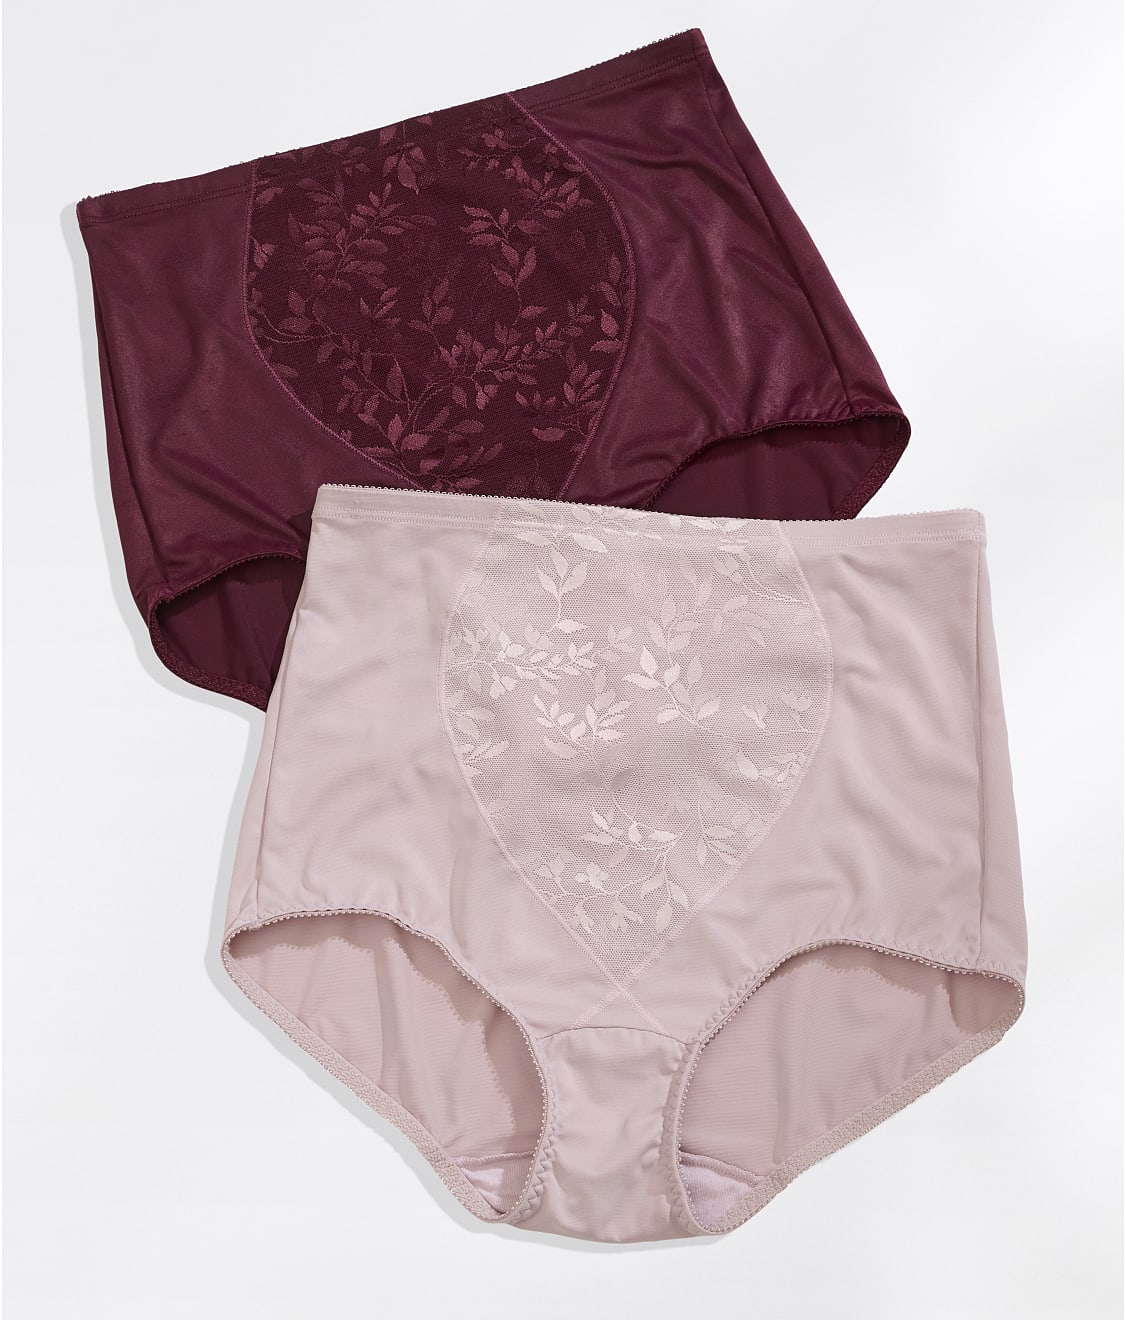 Bali Women's Light Tummy-Control Cotton 2-Pack Brief Underwear